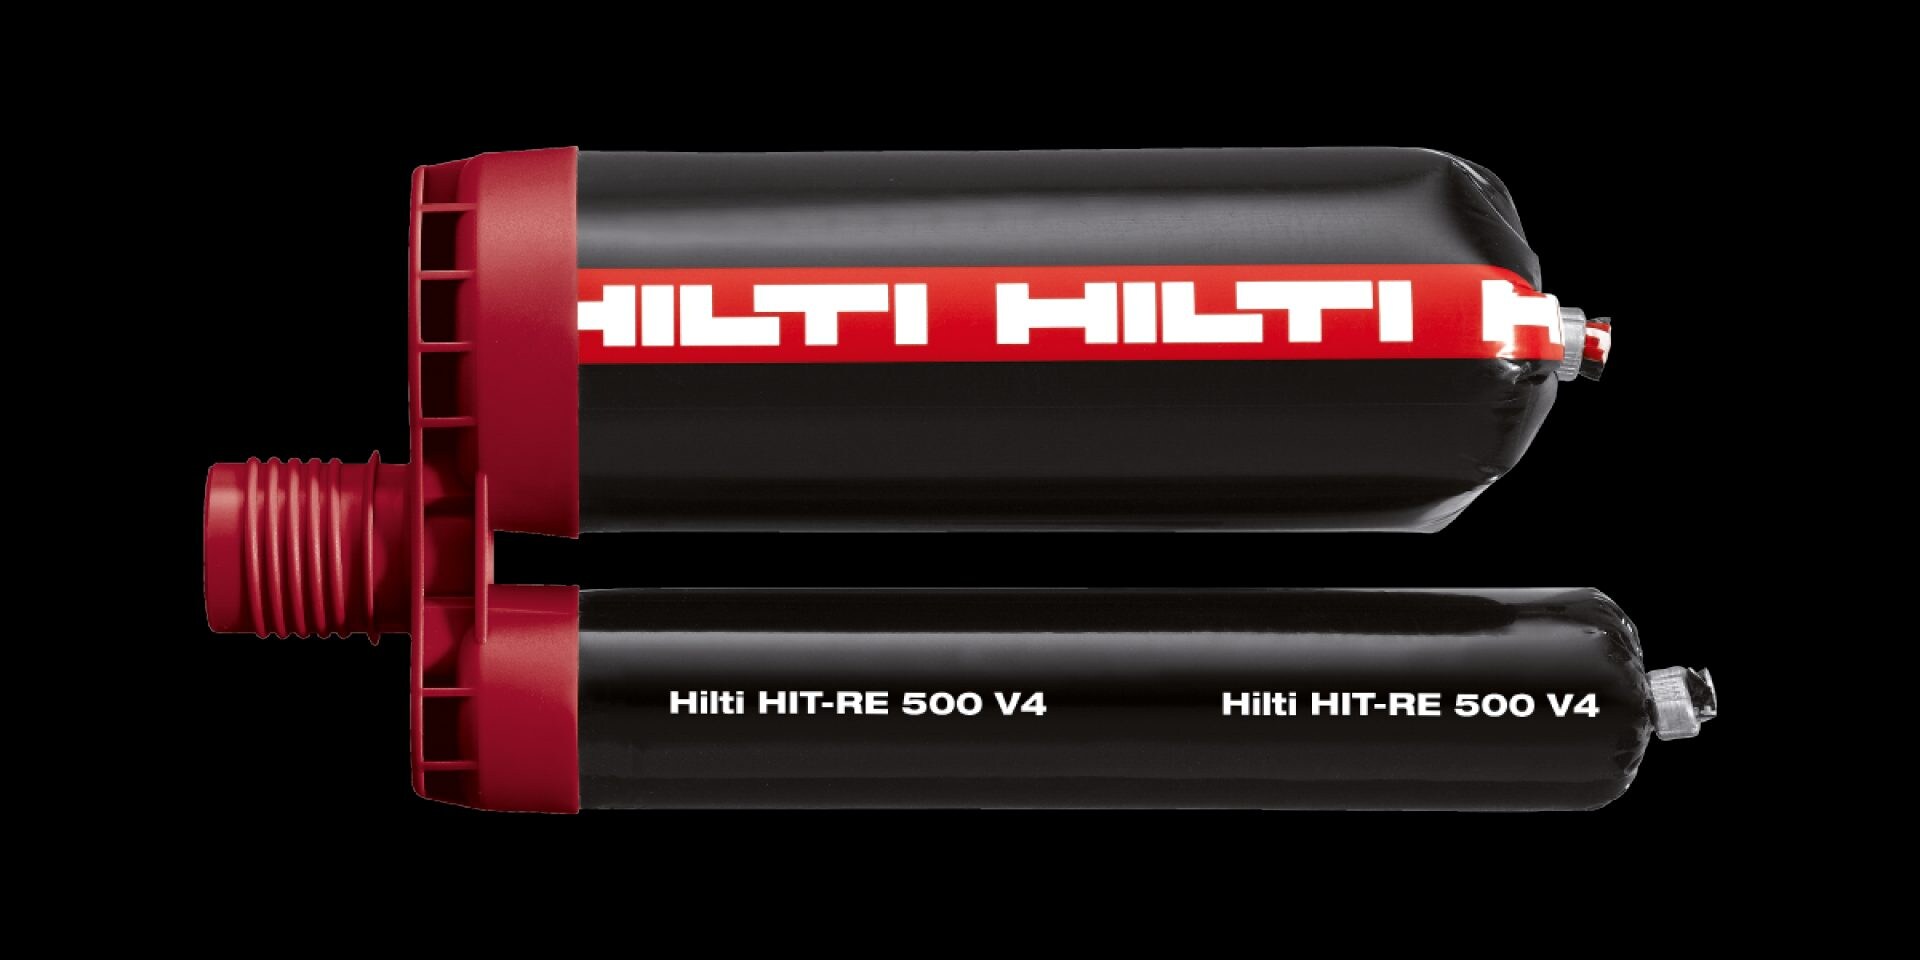 HIT-RE 500 V3 epoximassa med hög prestanda, ingår i Hilti SafeSet-system